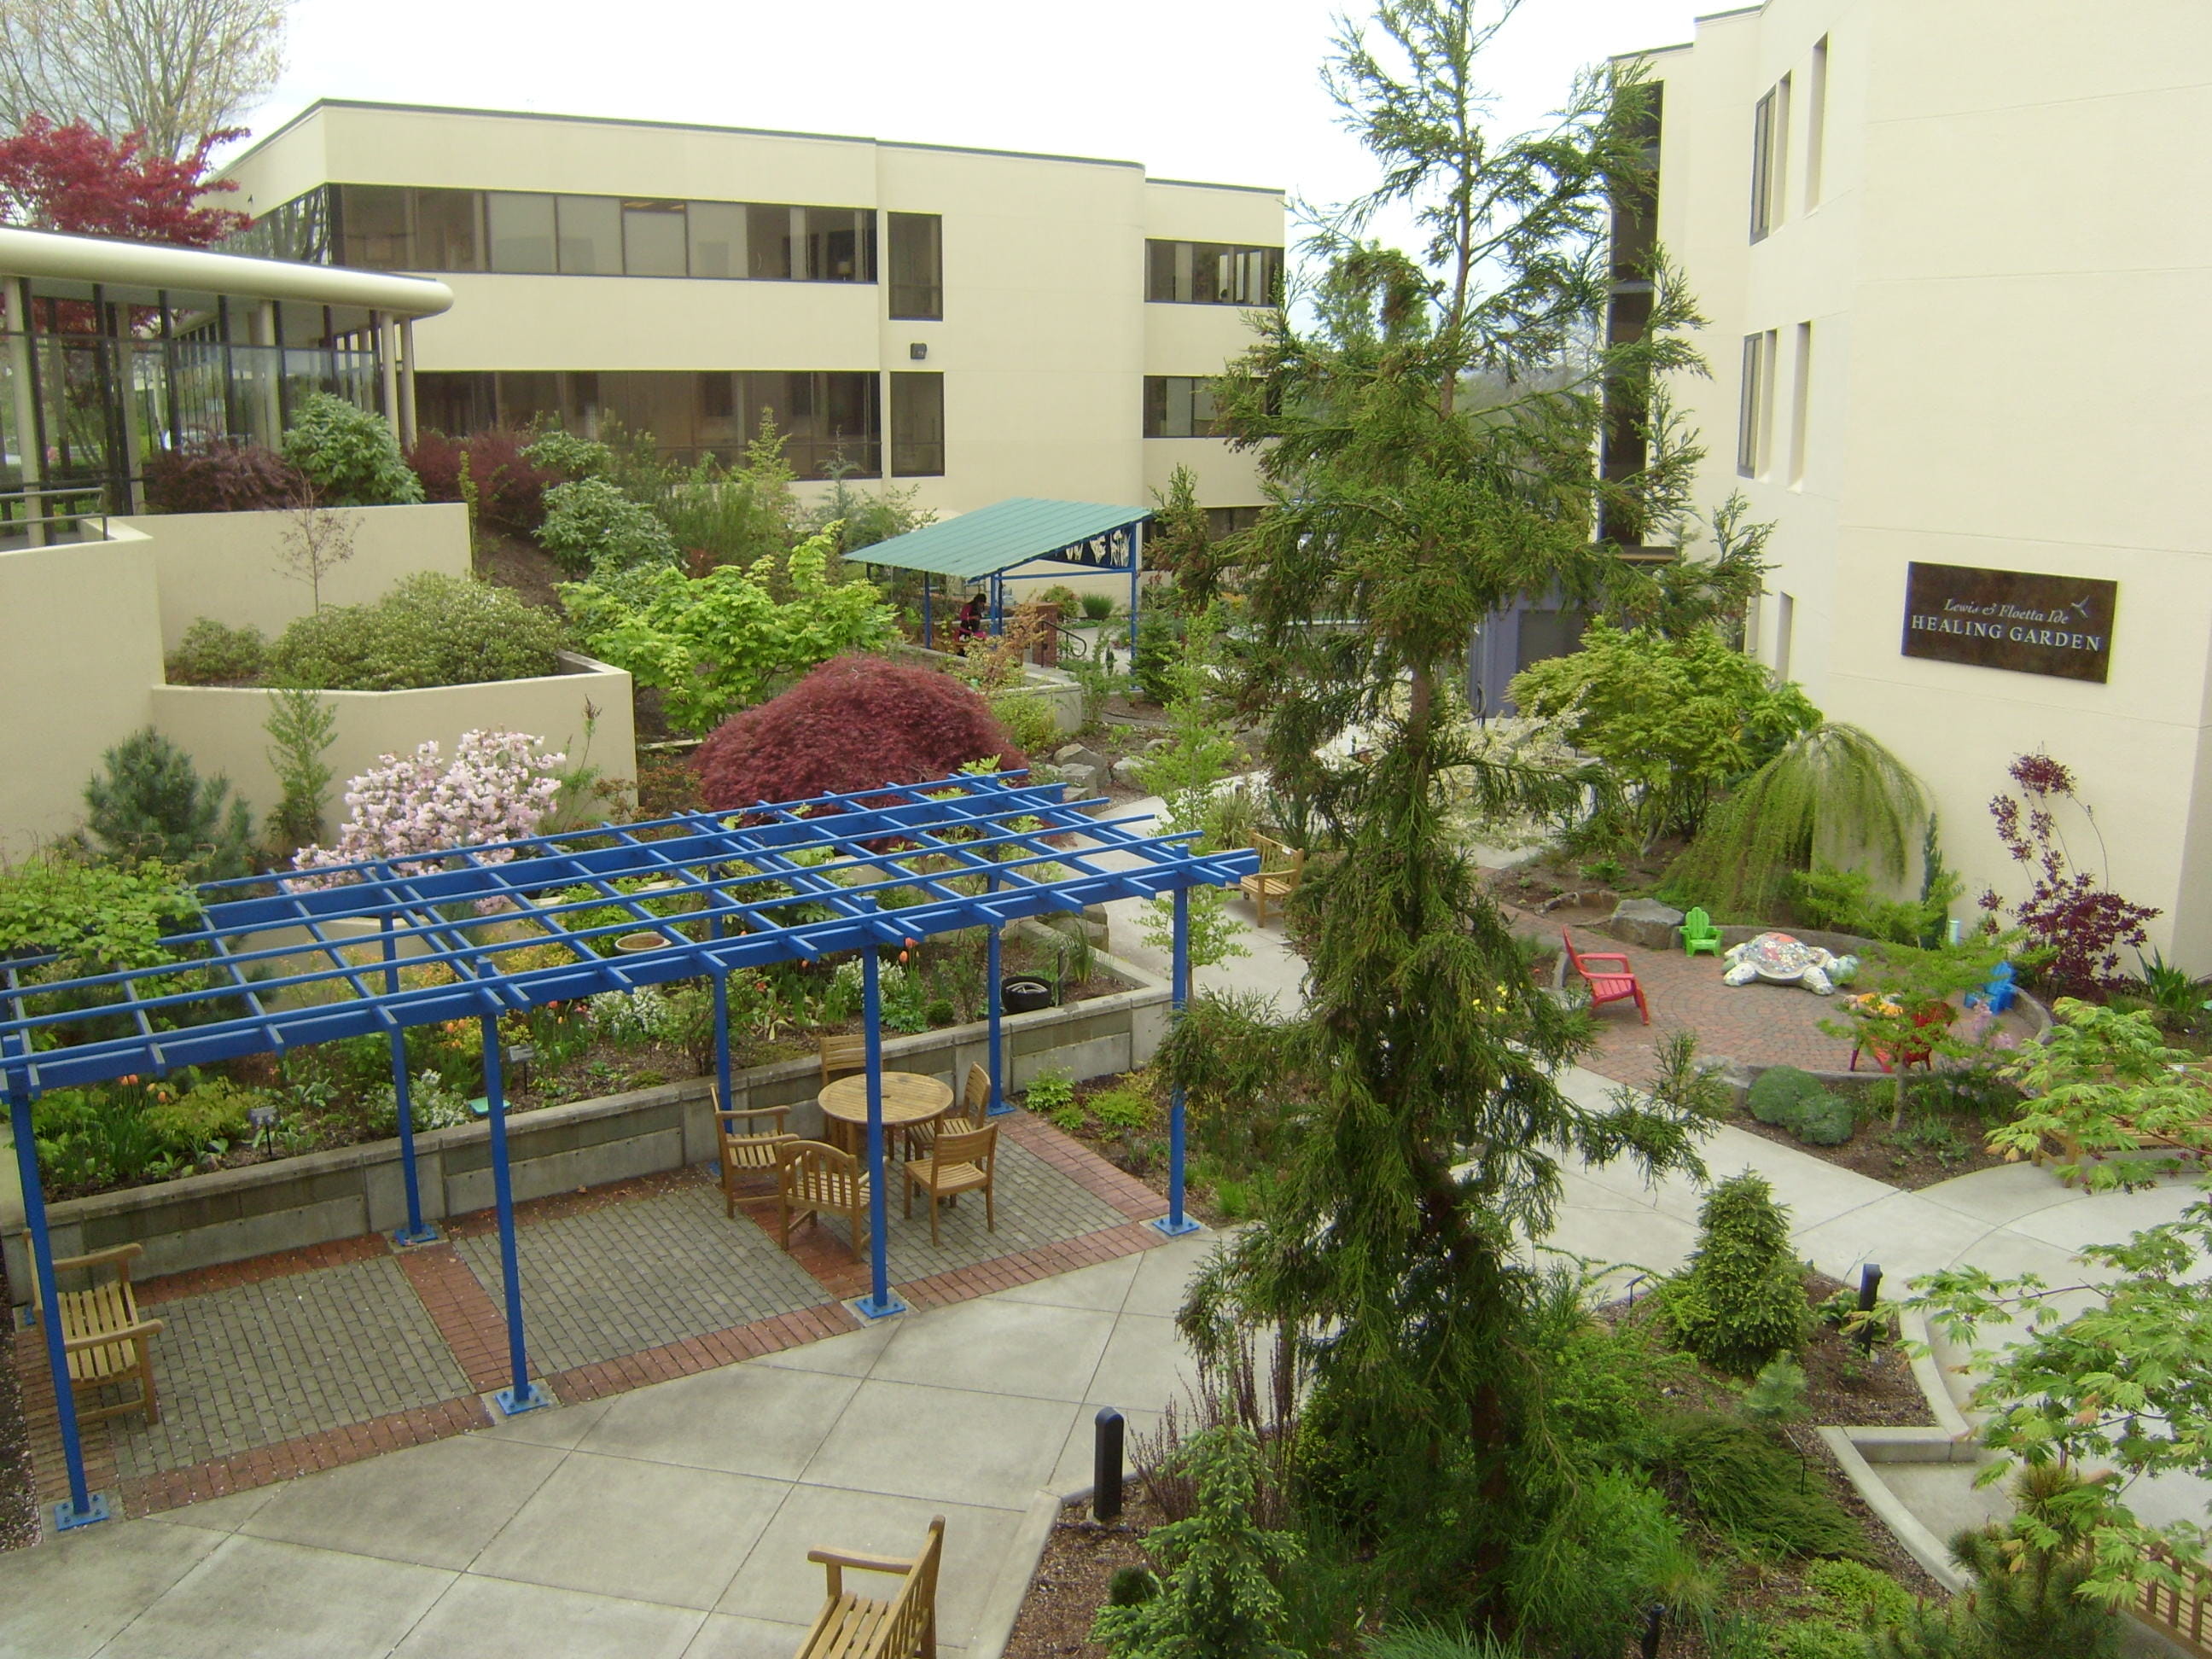 Meridian Park Medical Center garden patio view